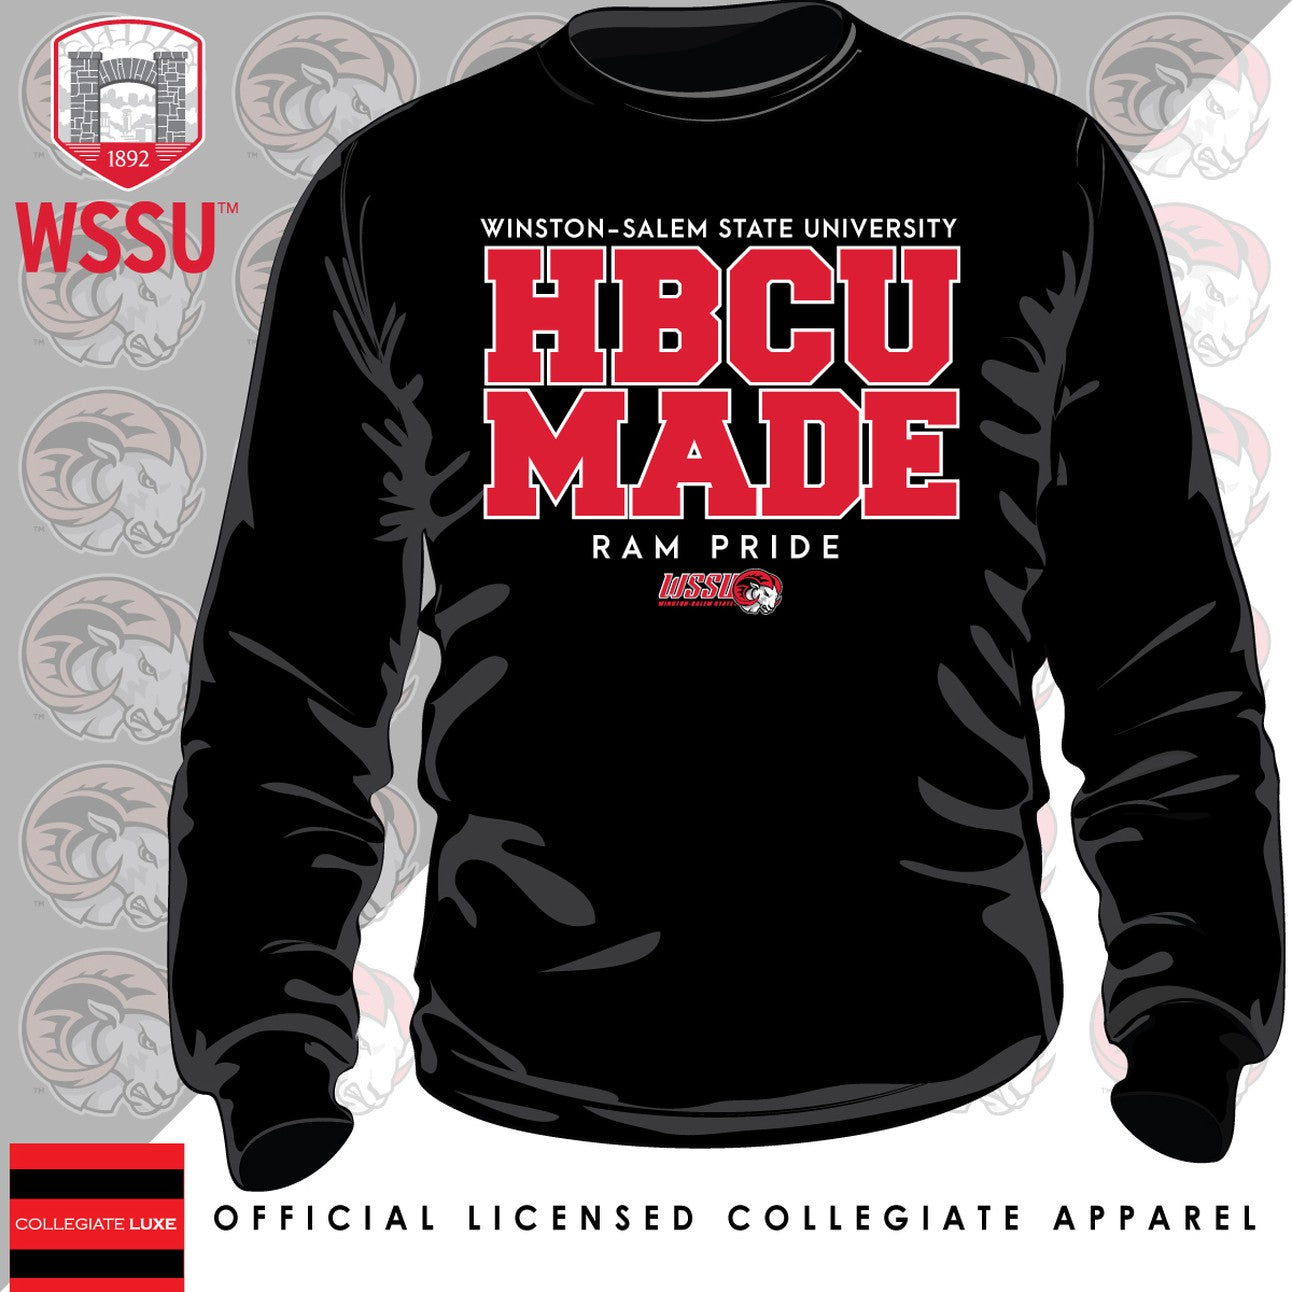 WSSU | HBCU MADE Black Unisex Sweatshirts (z)